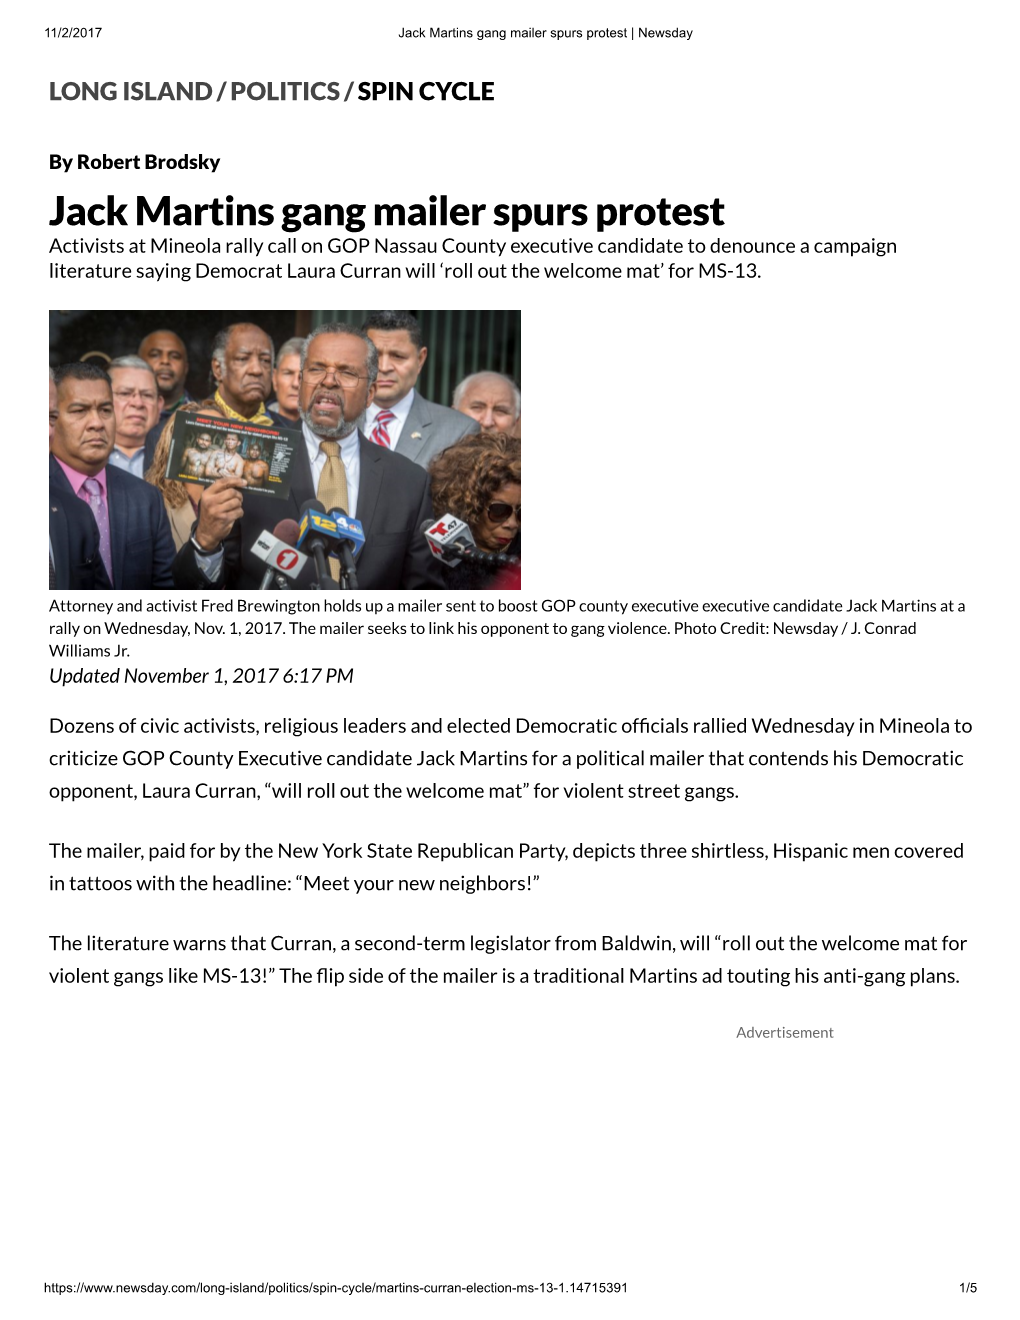 Jack Martins Gang Mailer Spurs Protest | Newsday